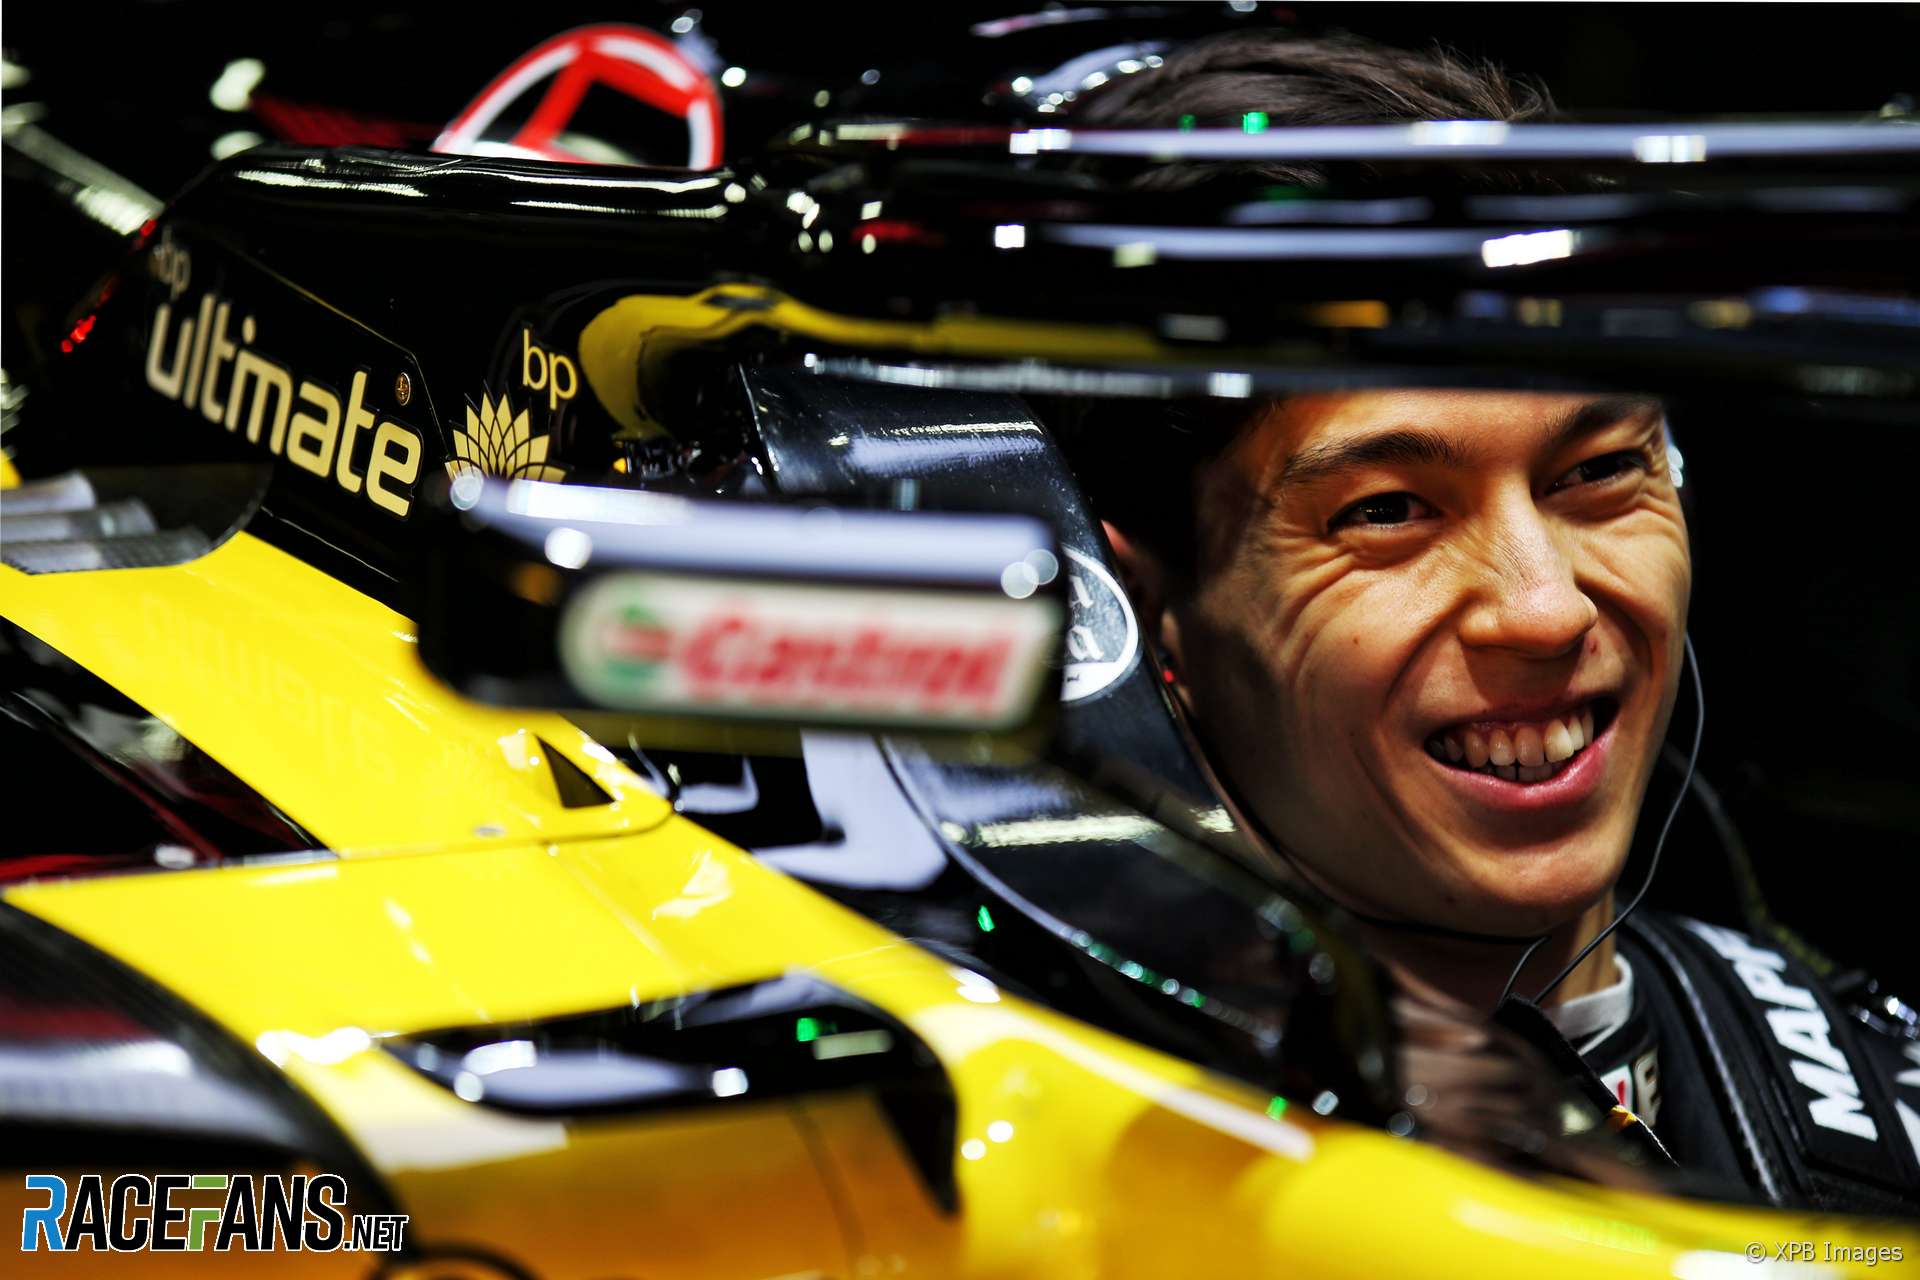 Jack Aitken, Renault, Circuit de Catalunya